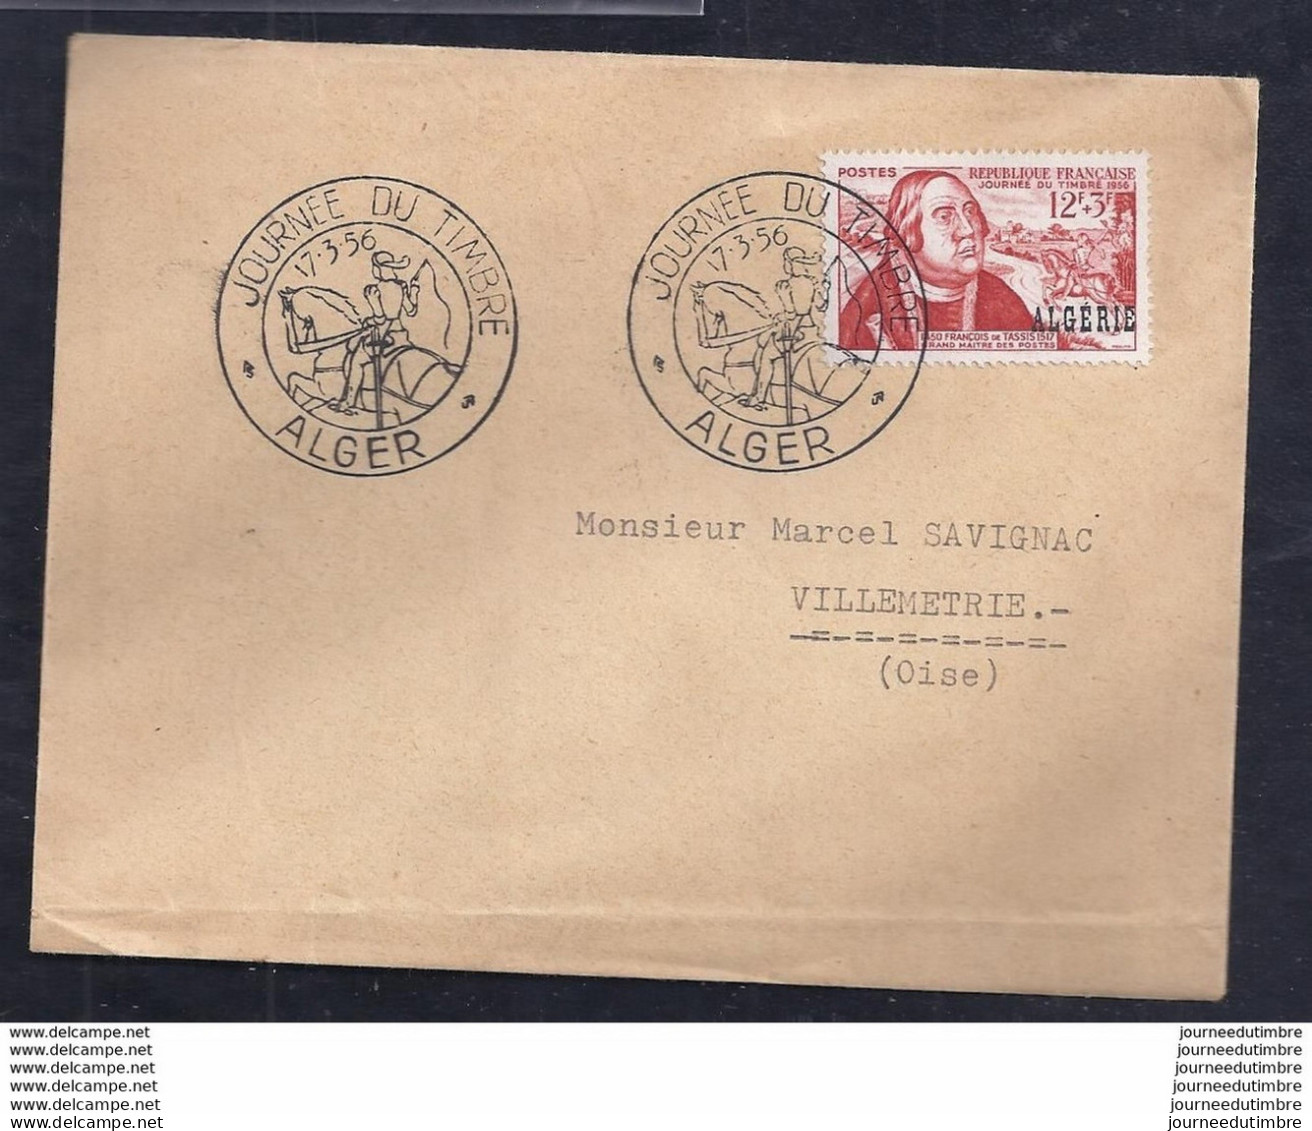 Enveloppe Locale Journee Du Timbre 1956 Alger - FDC